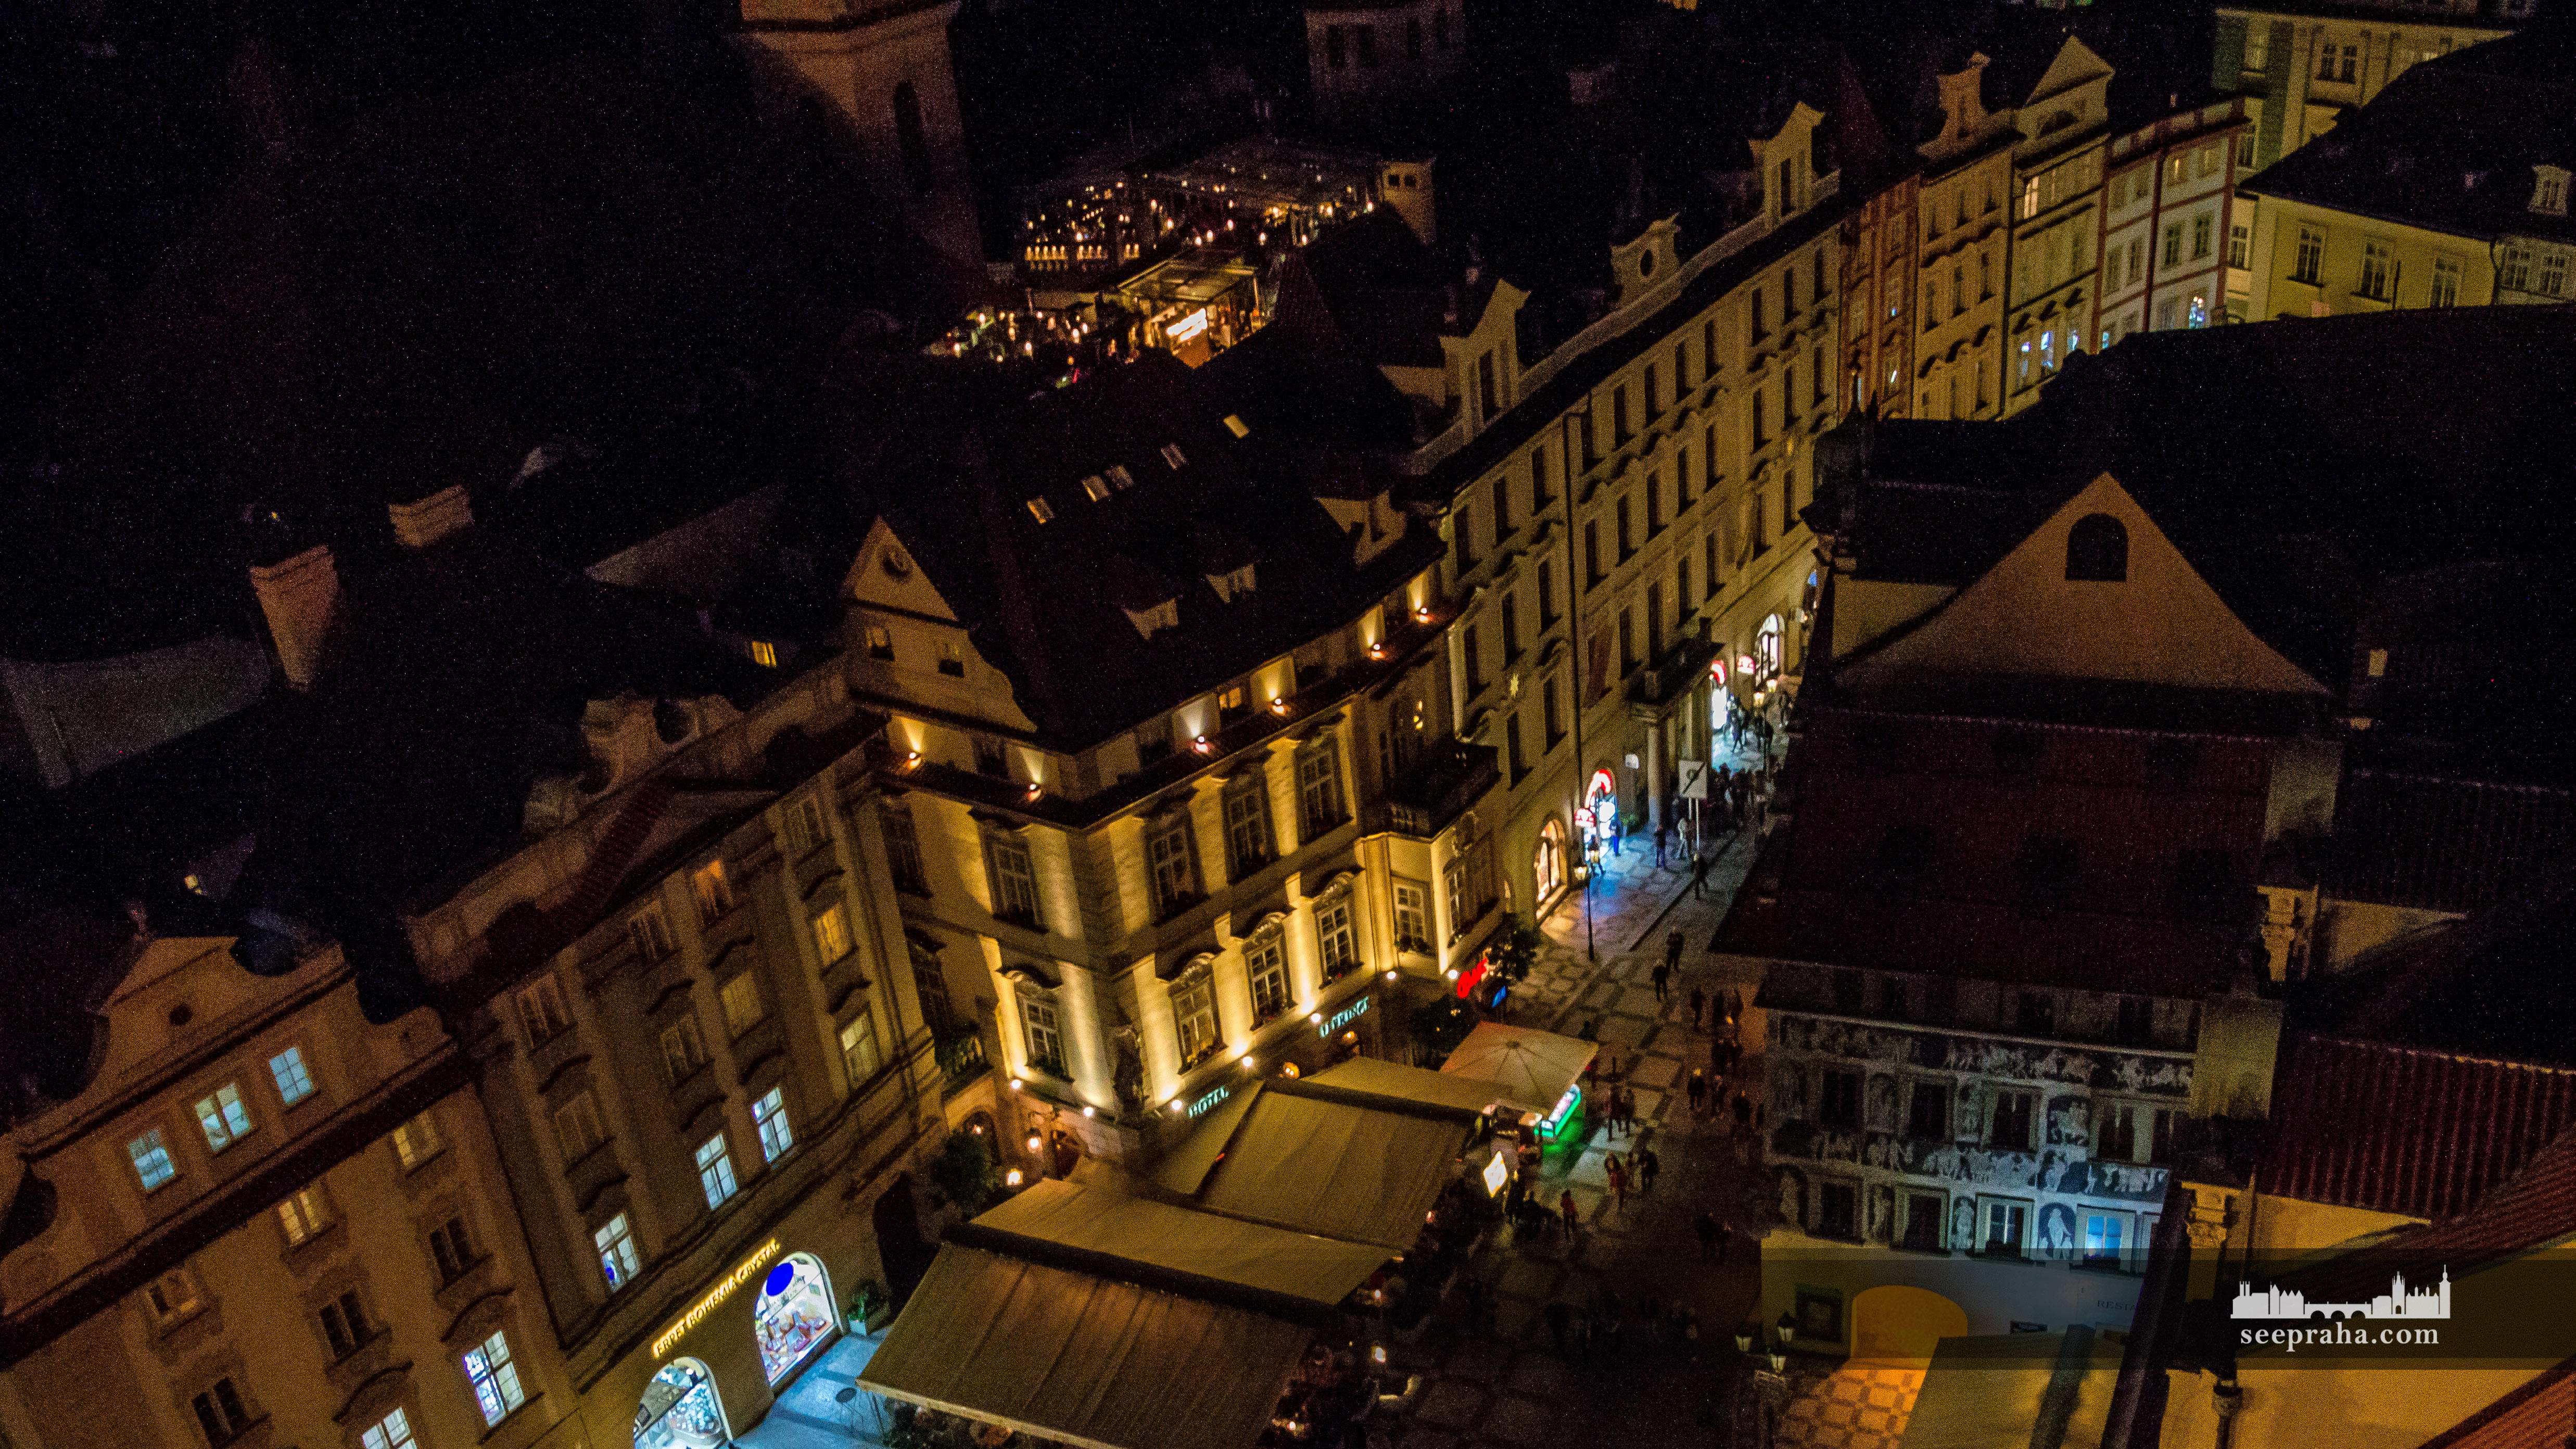 Terasa U Prince auf dem Dach des Hotels, Prag, Tschechien